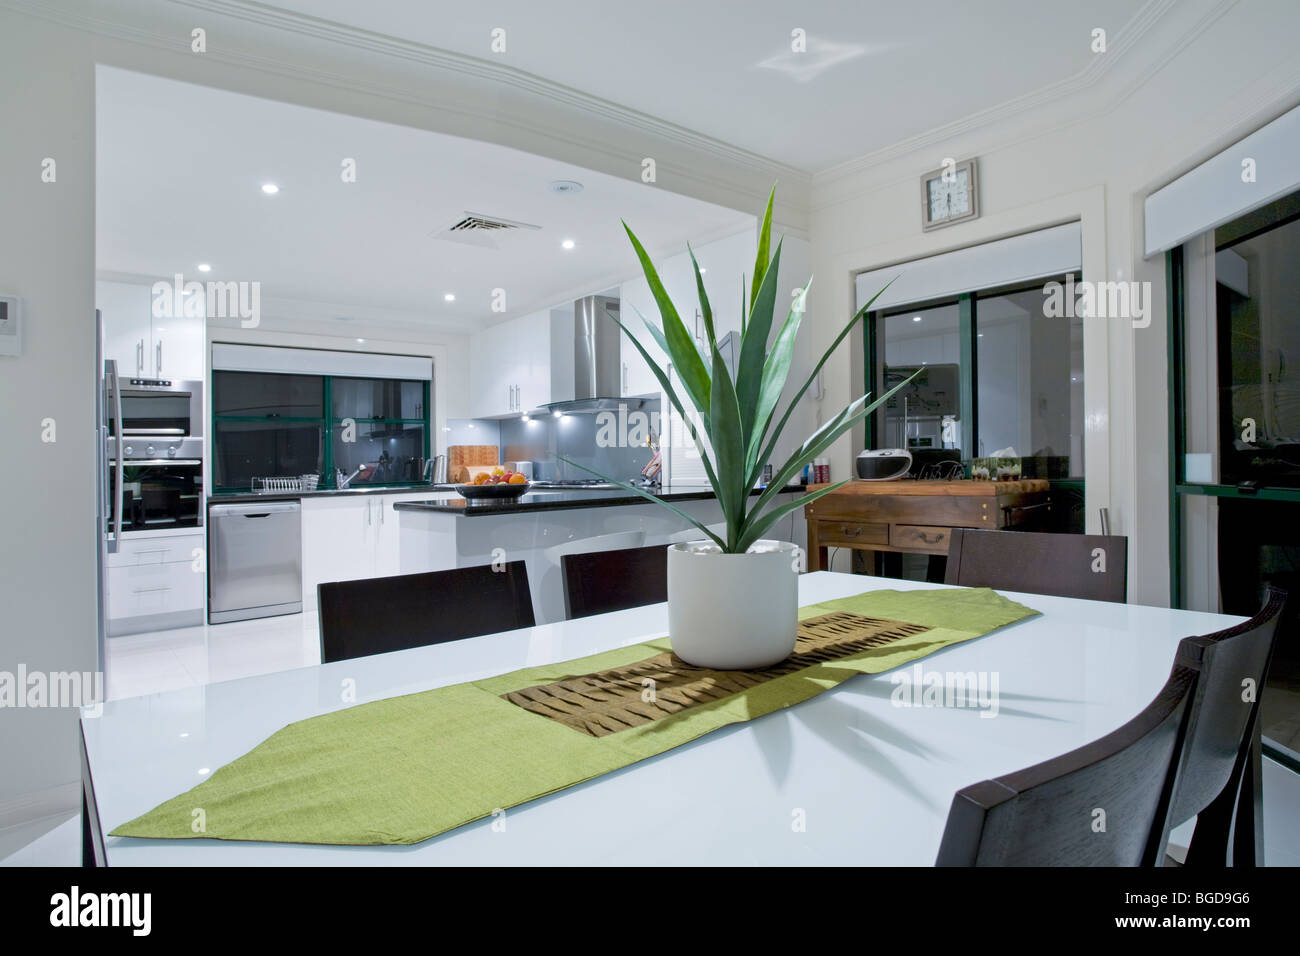 Modern kitchen in luxury mansion Stock Photo